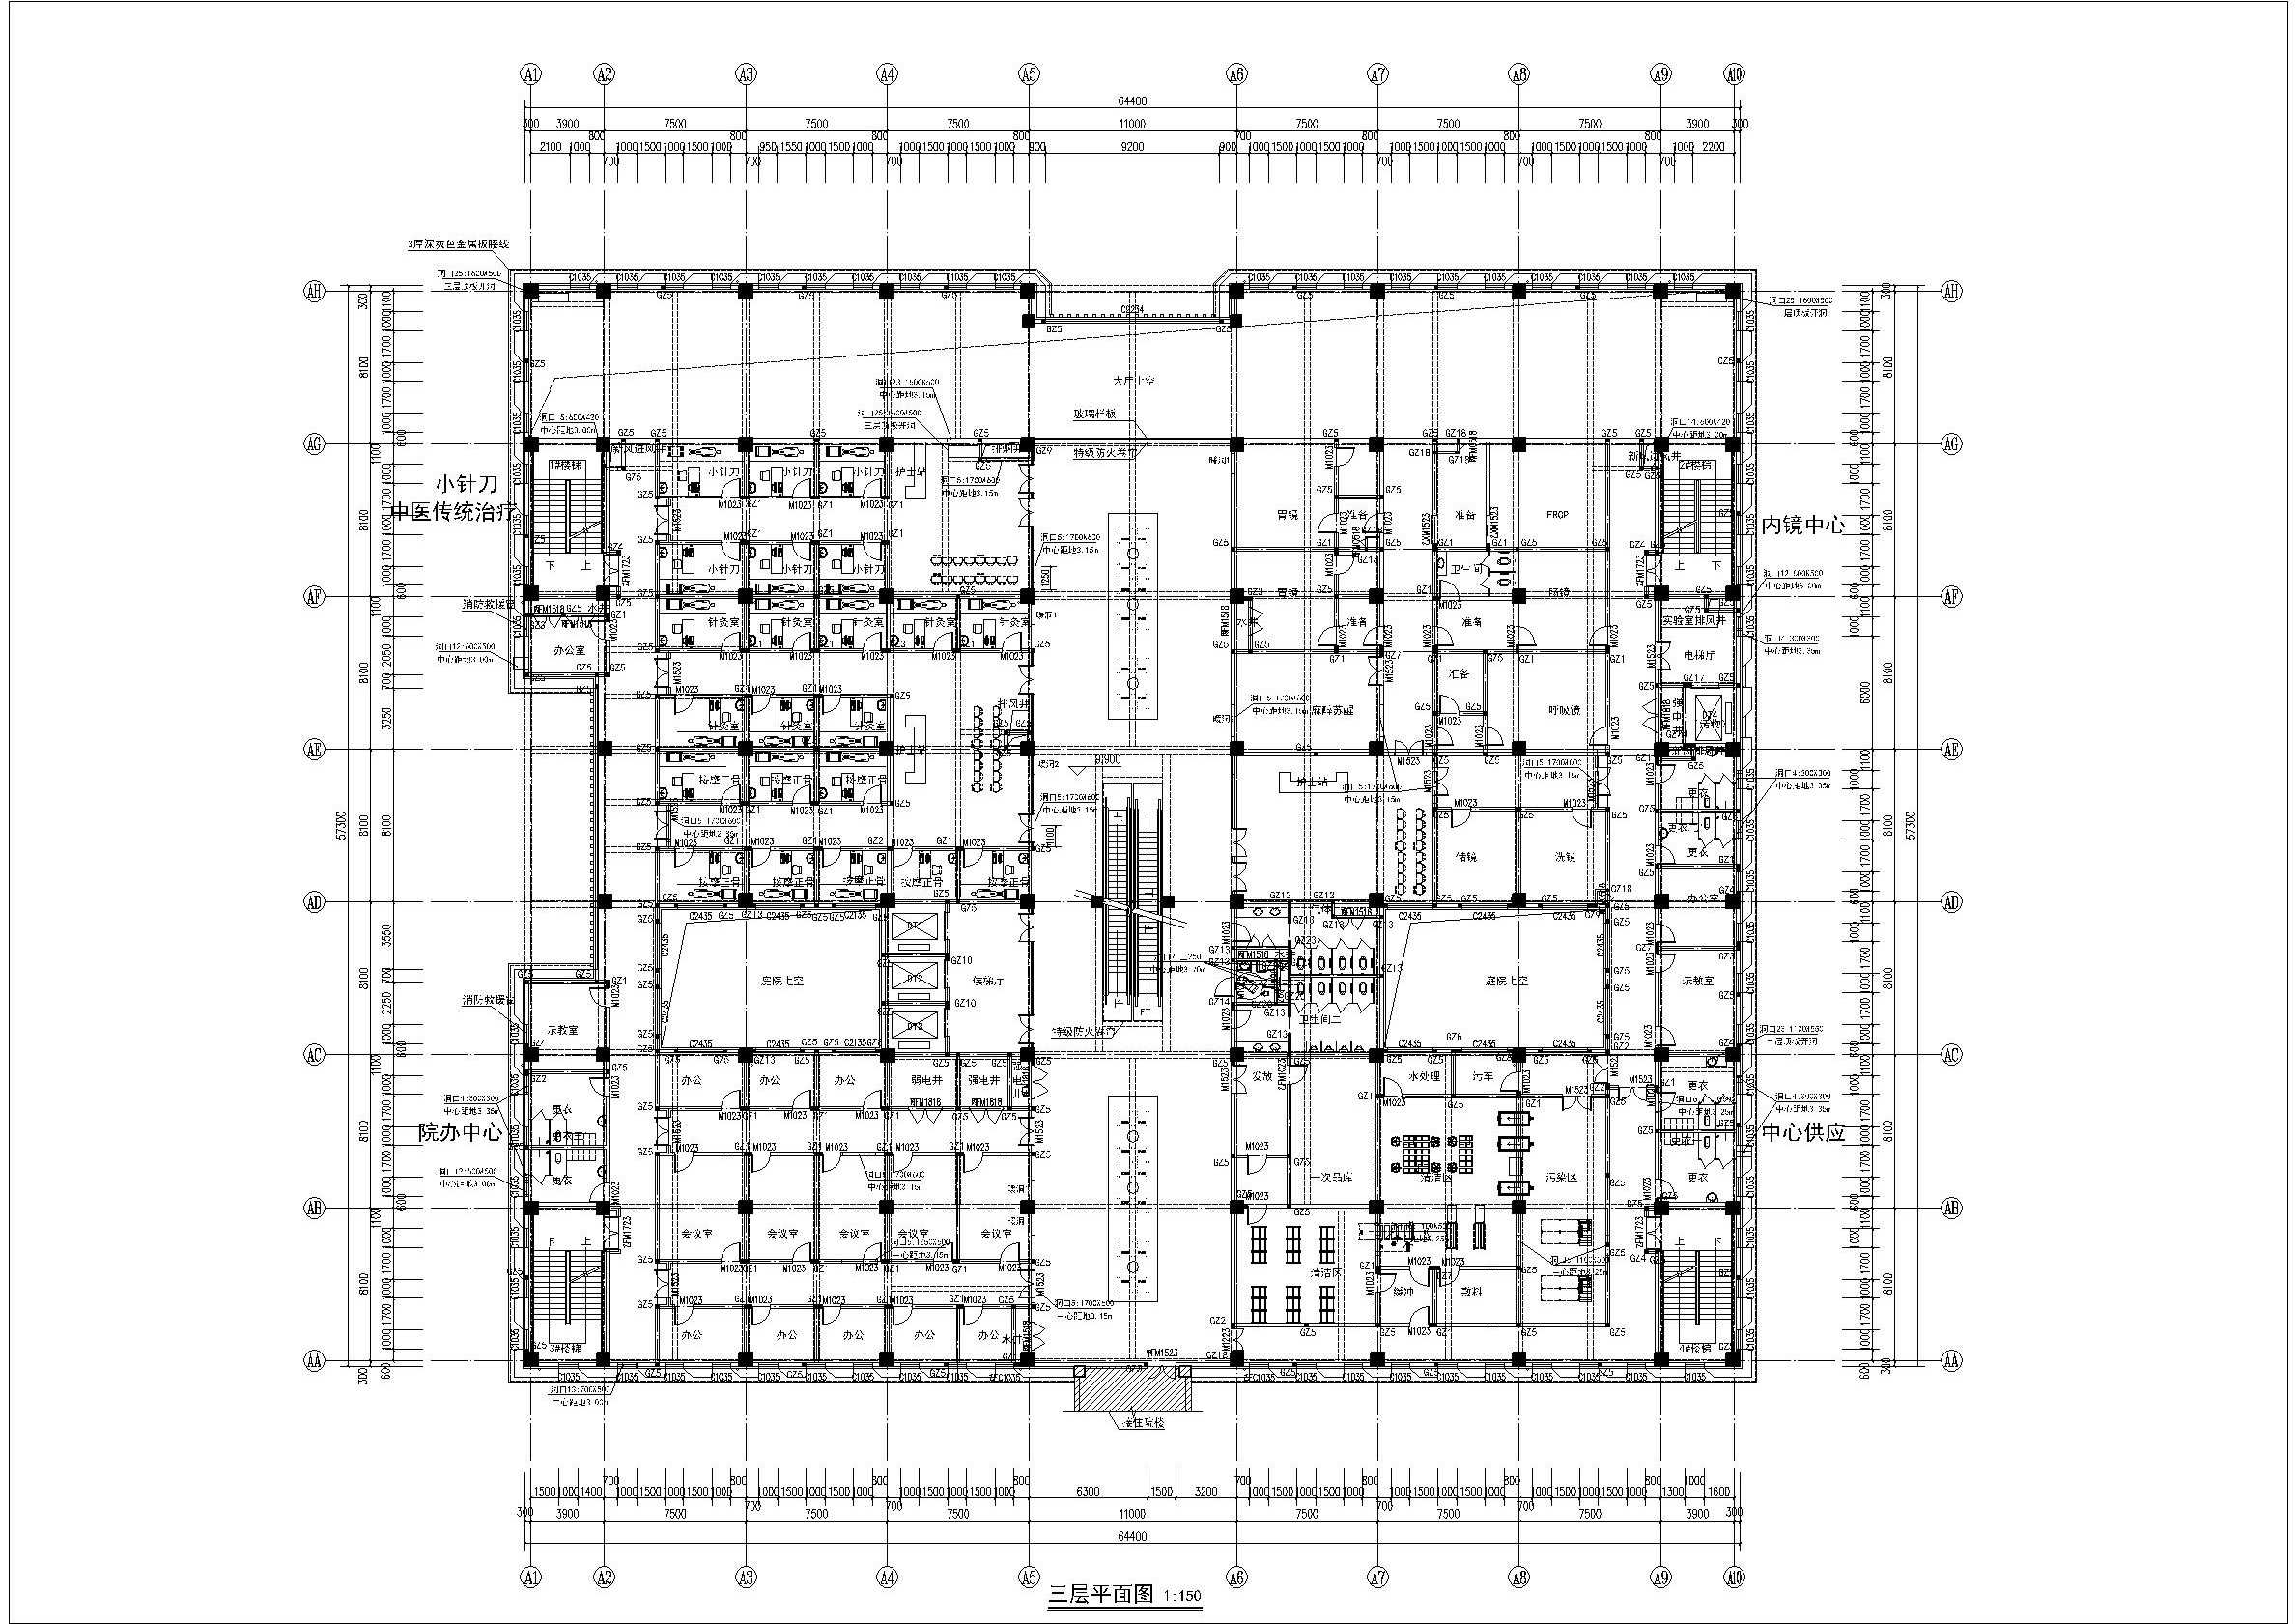 宣化中医院门诊楼建筑施工图-三层平面图